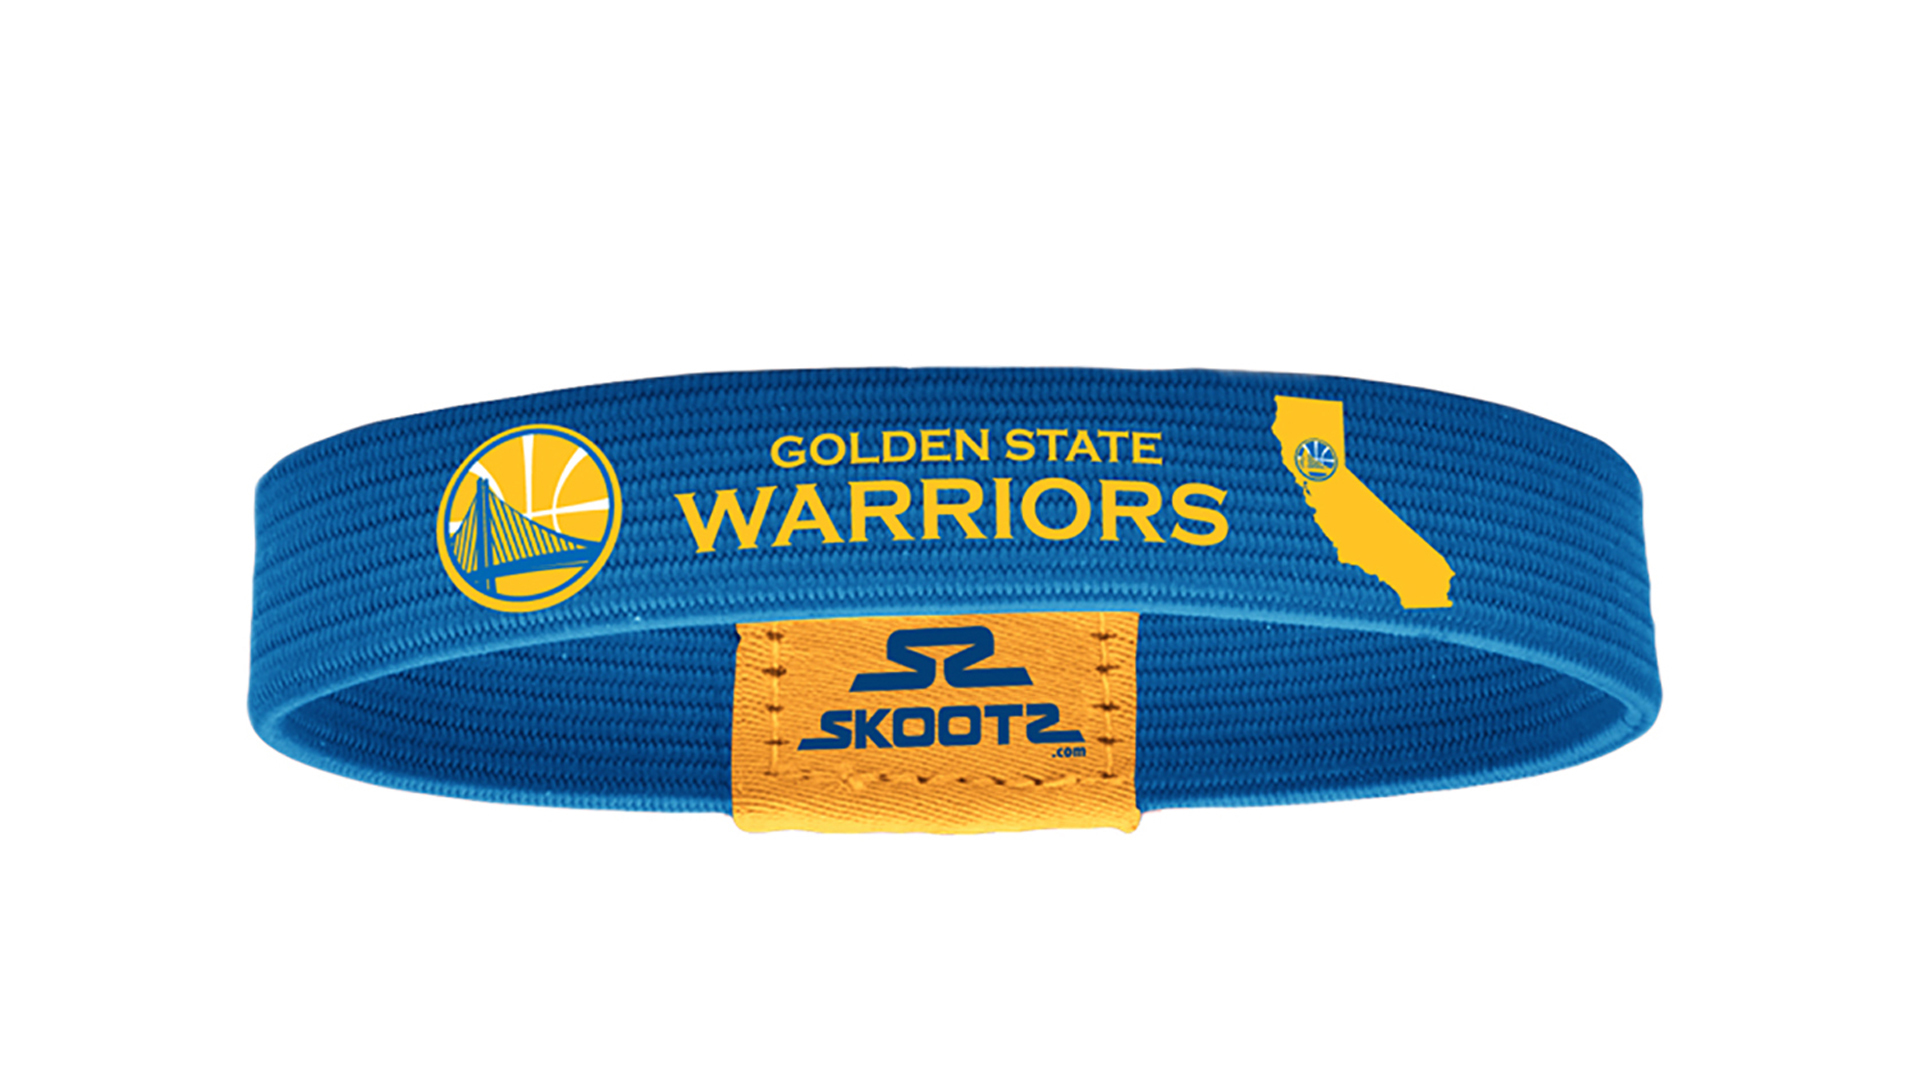 Golden State Warriors Skootz - HD Wallpaper 